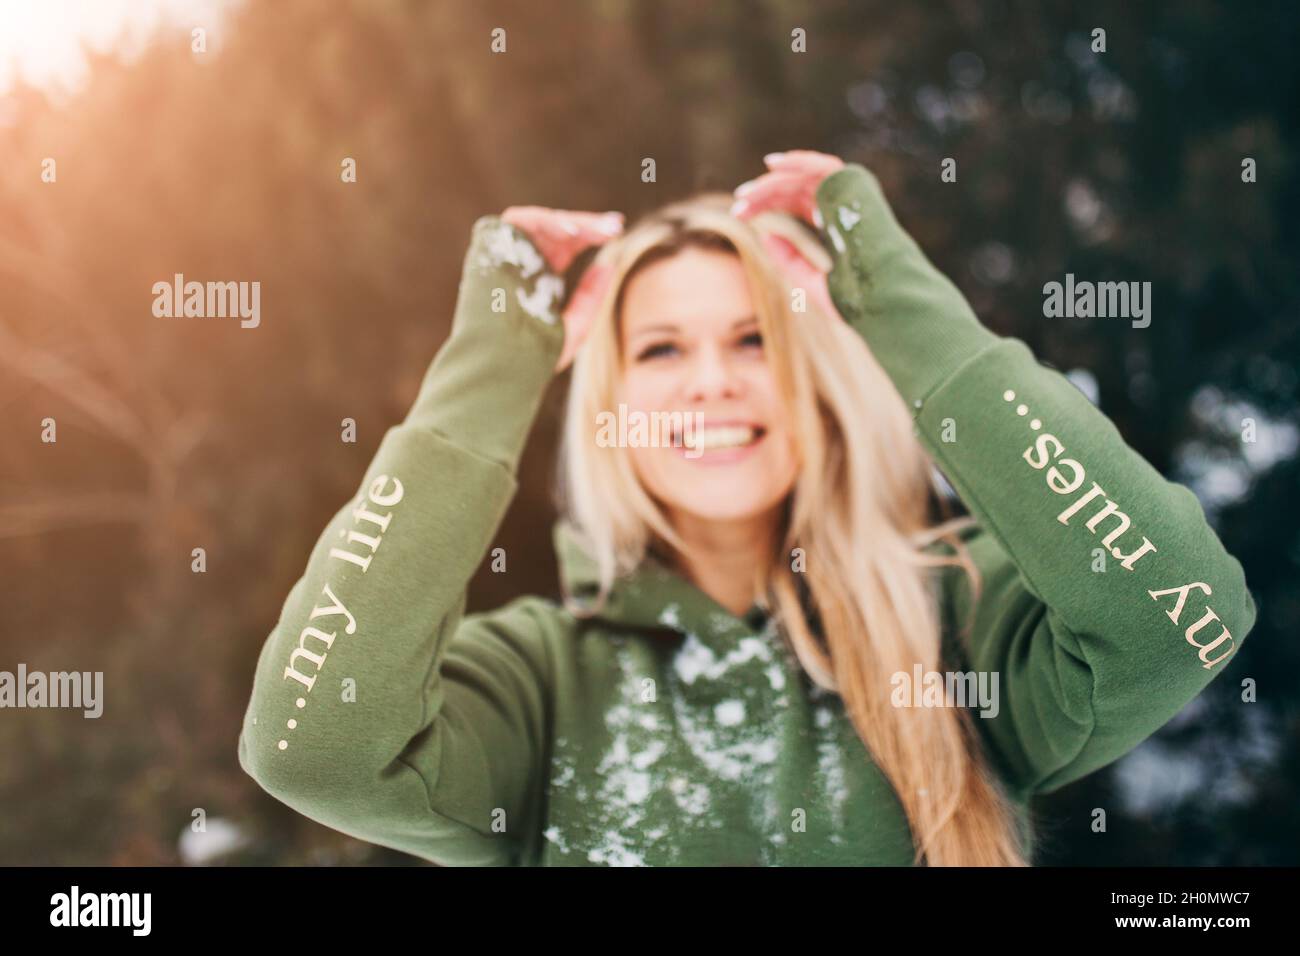 Blauäugige Blondine im grünen Hoodie im Winter im Wald - Fokus auf die Ärmel mit der Aufschrift 'Mein Leben - meine Regeln' Stockfoto